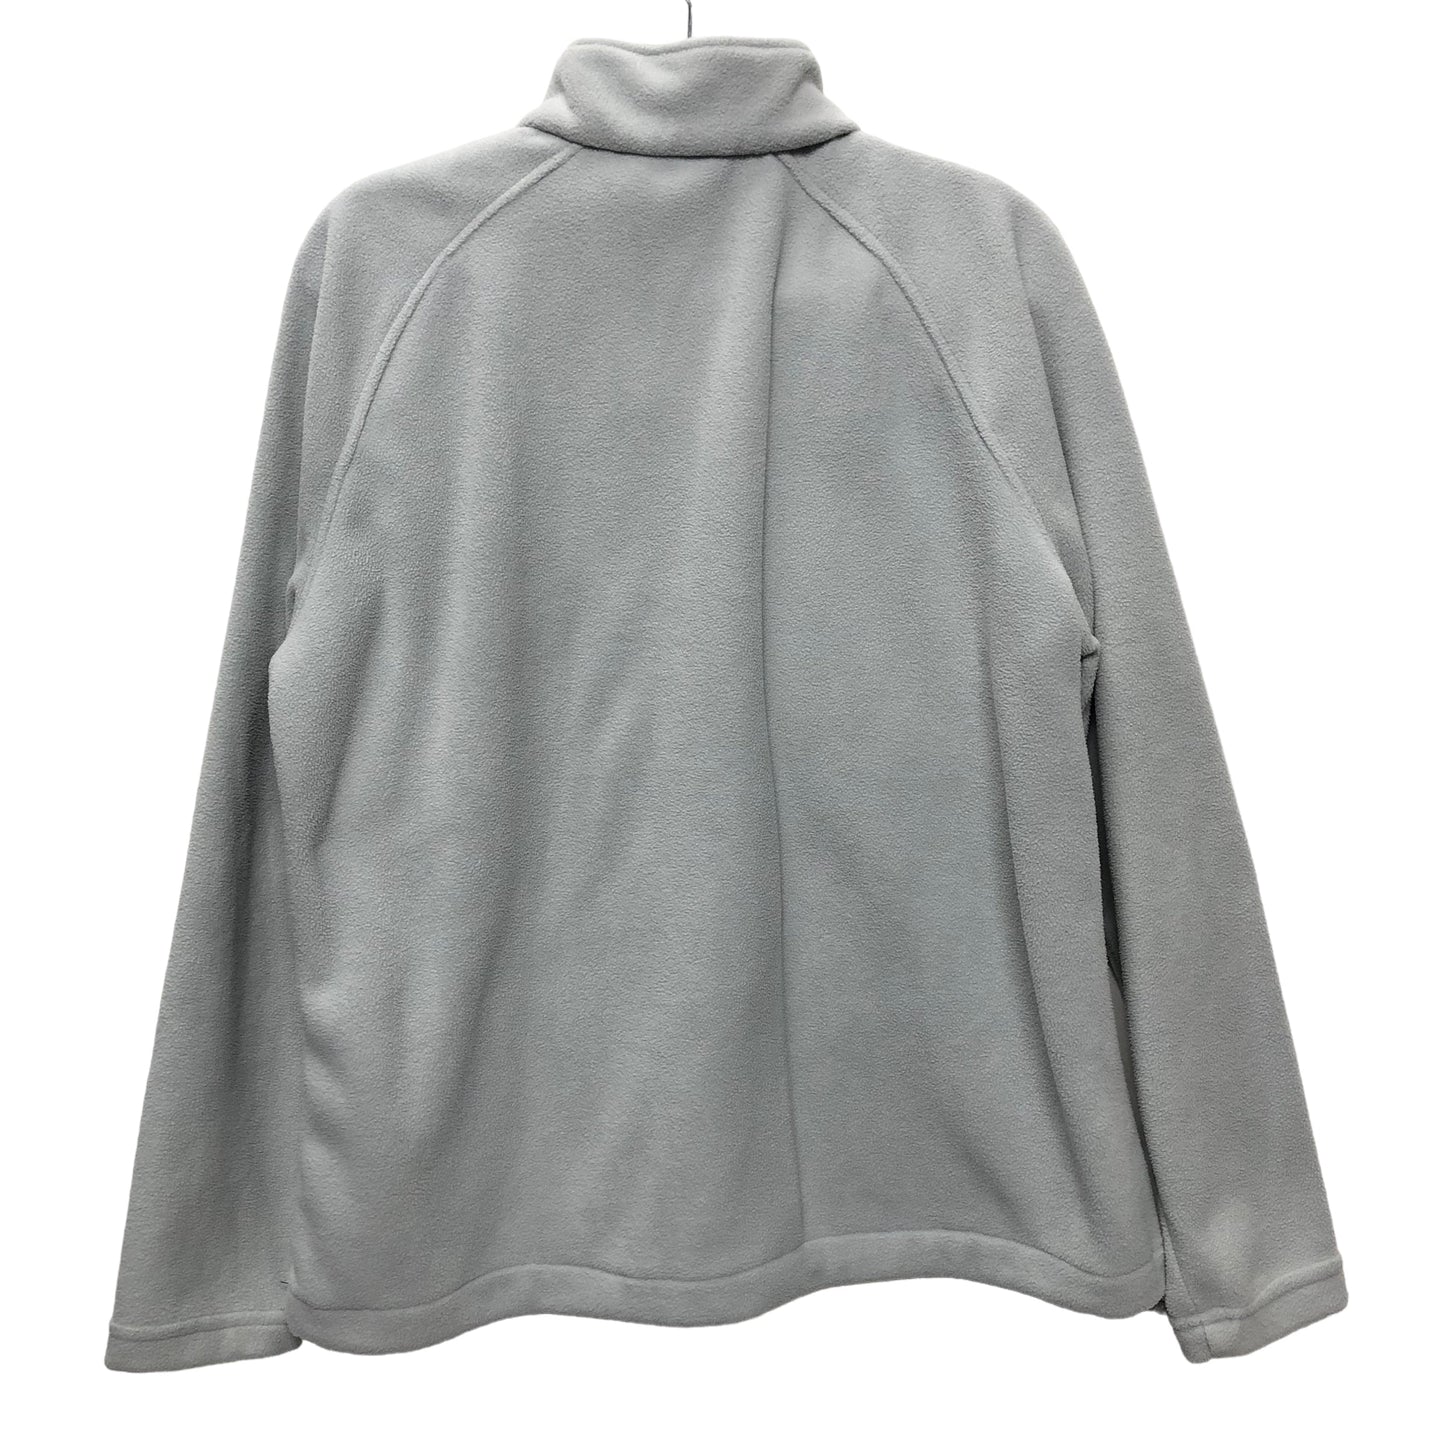 Jacket Fleece By New Balance  Size: Xl